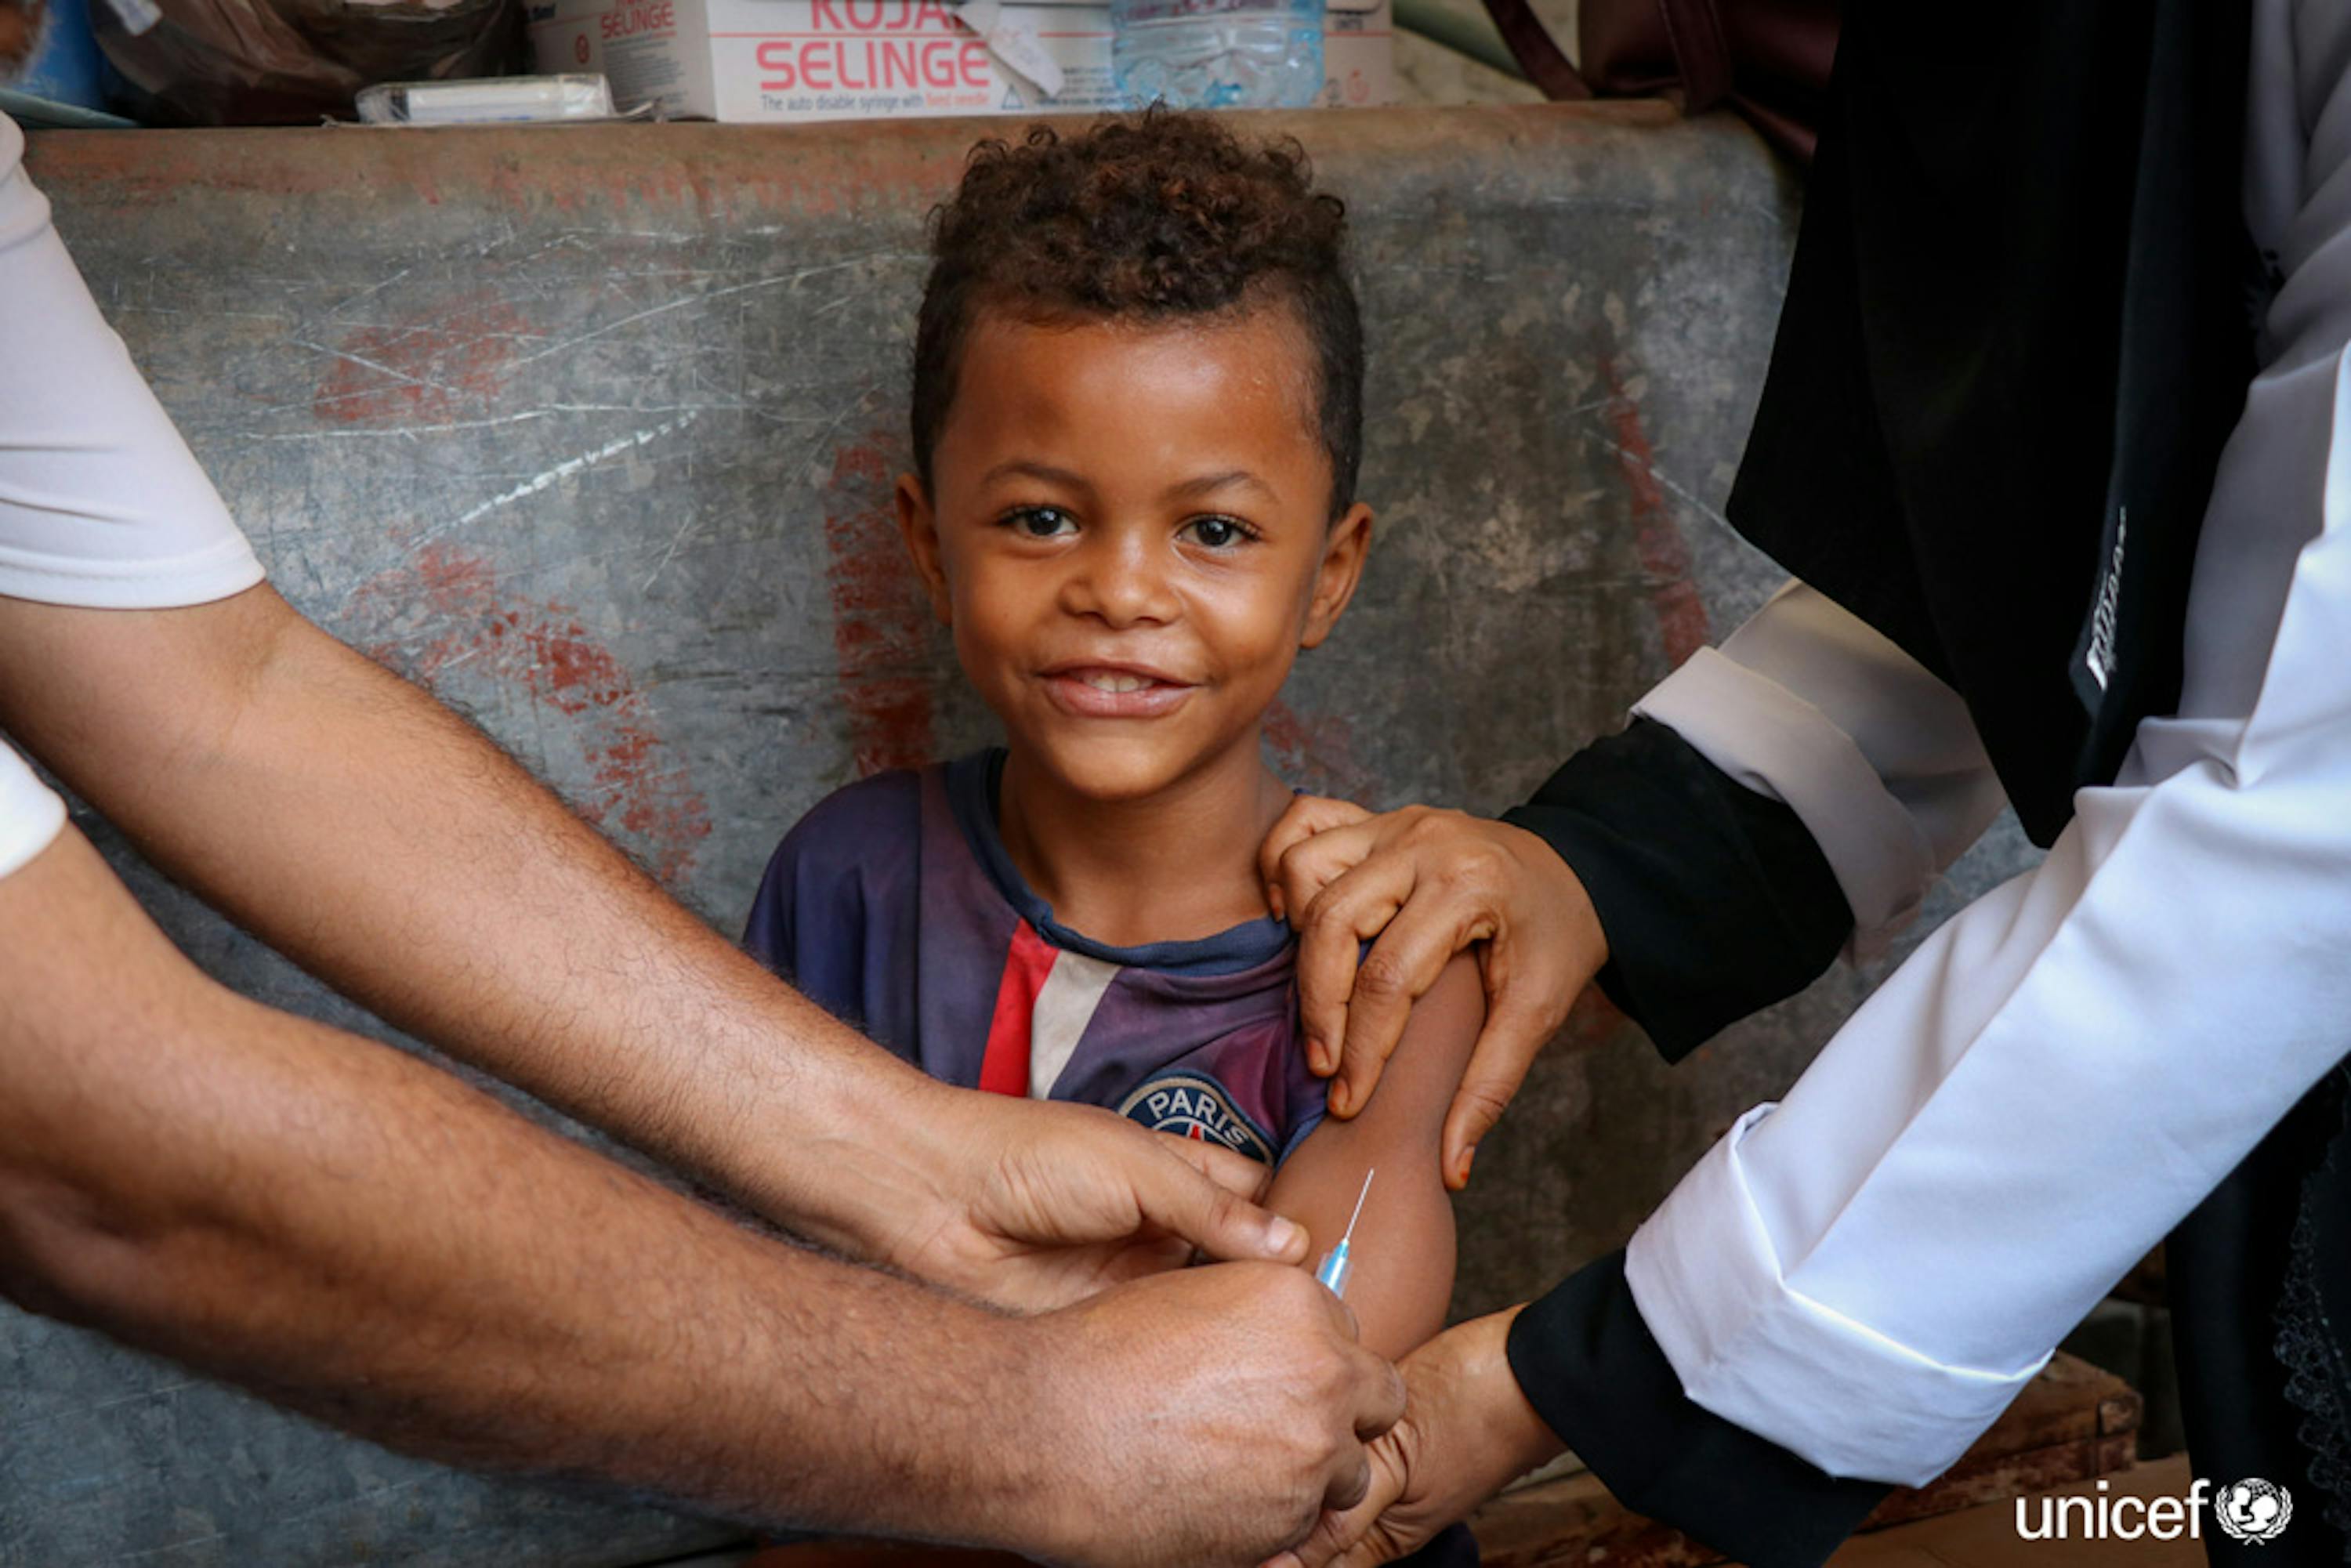 Un bambino di Aden (Yemen) riceve una dose di vaccino contro morbillo e rosolia, due malattie infettive particolarmente contagiose in situazioni di crisi umanitaria - © UNICEF/UN0284427/Fadhel